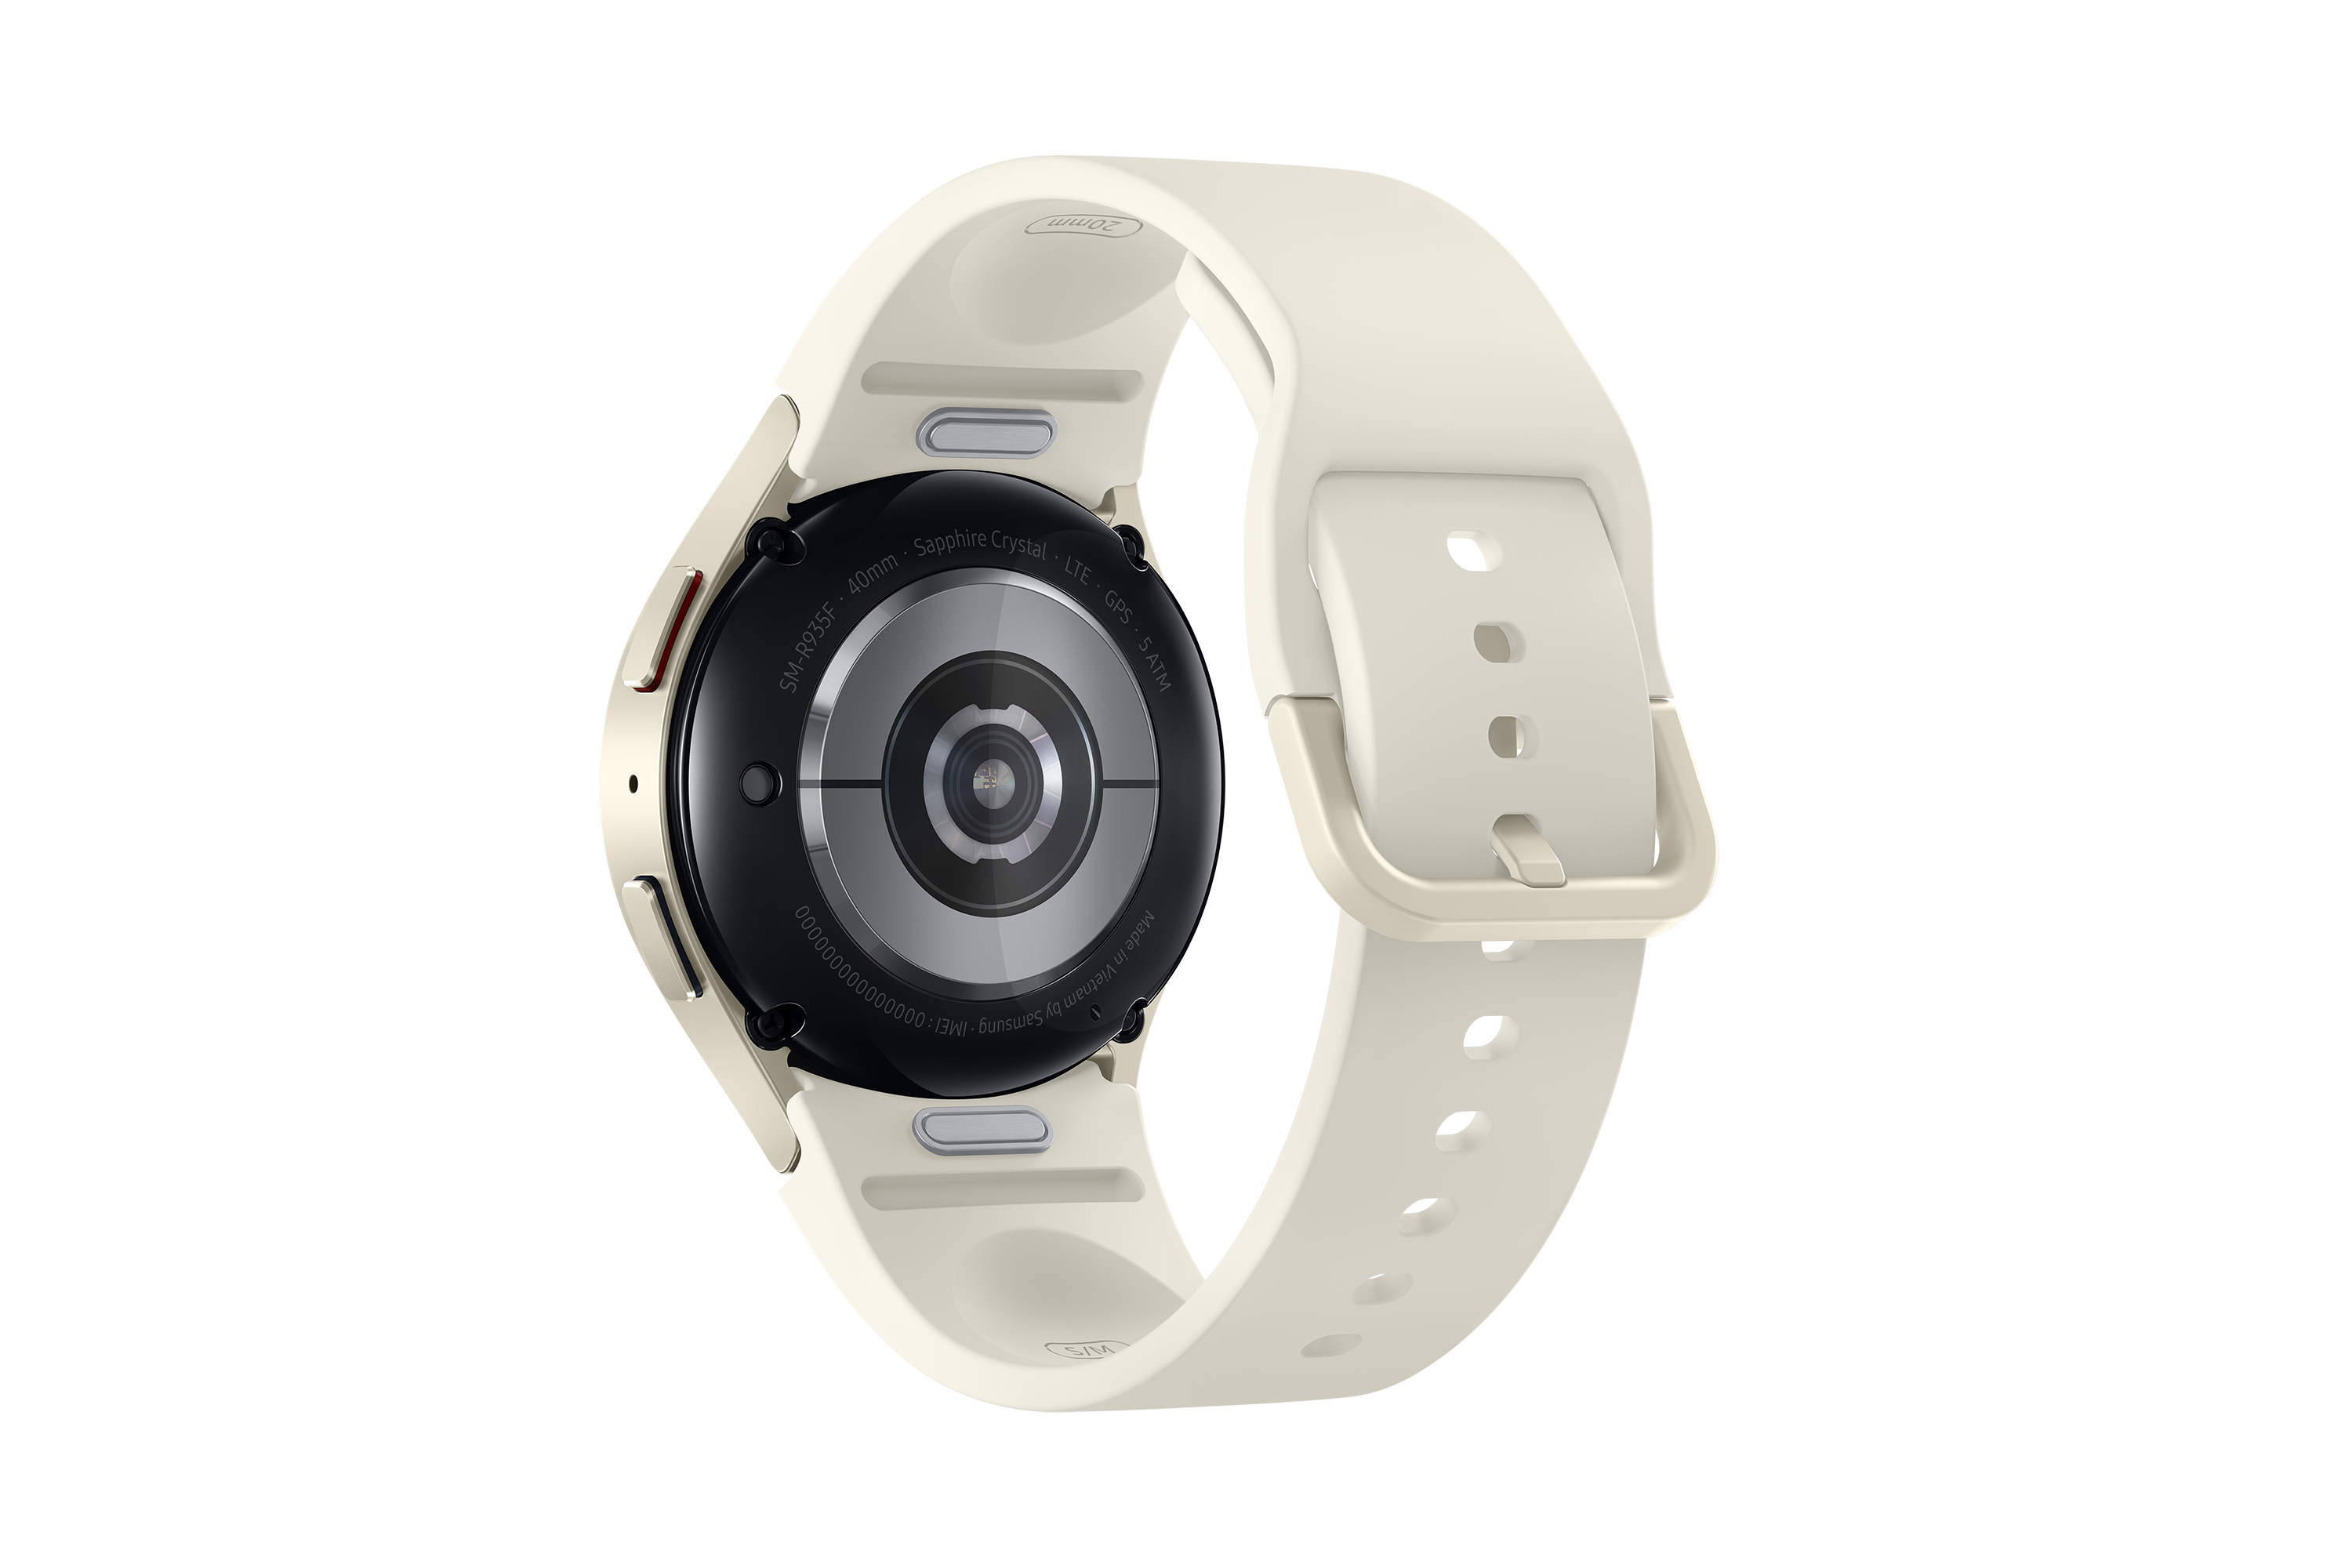 Samsung Galaxy Watch6 40mm Bluetooth